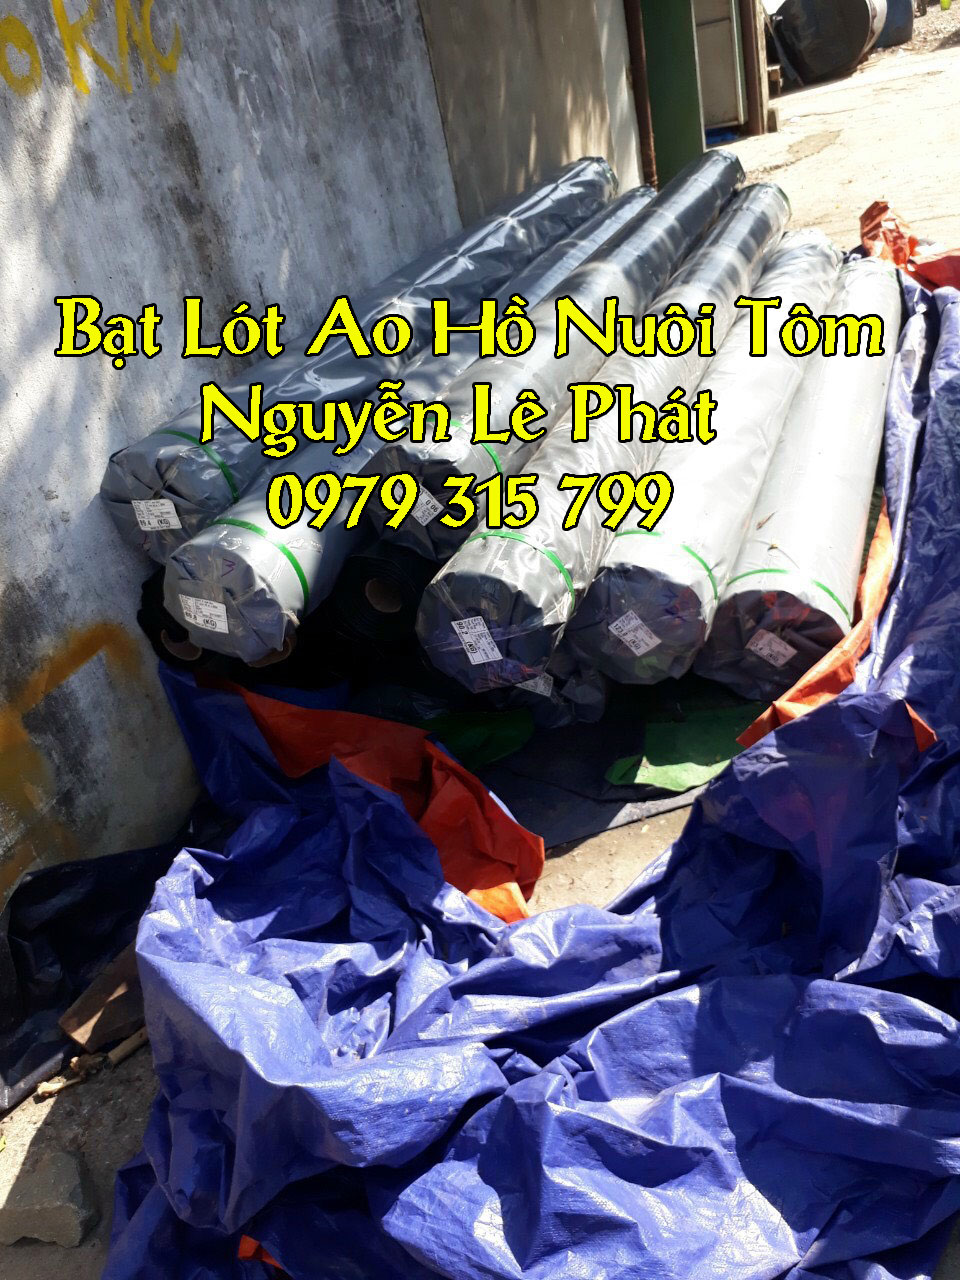 Địa chỉ cung cấp bạt lót ao hồ nuôi cá giá rẻ ở Long Khánh